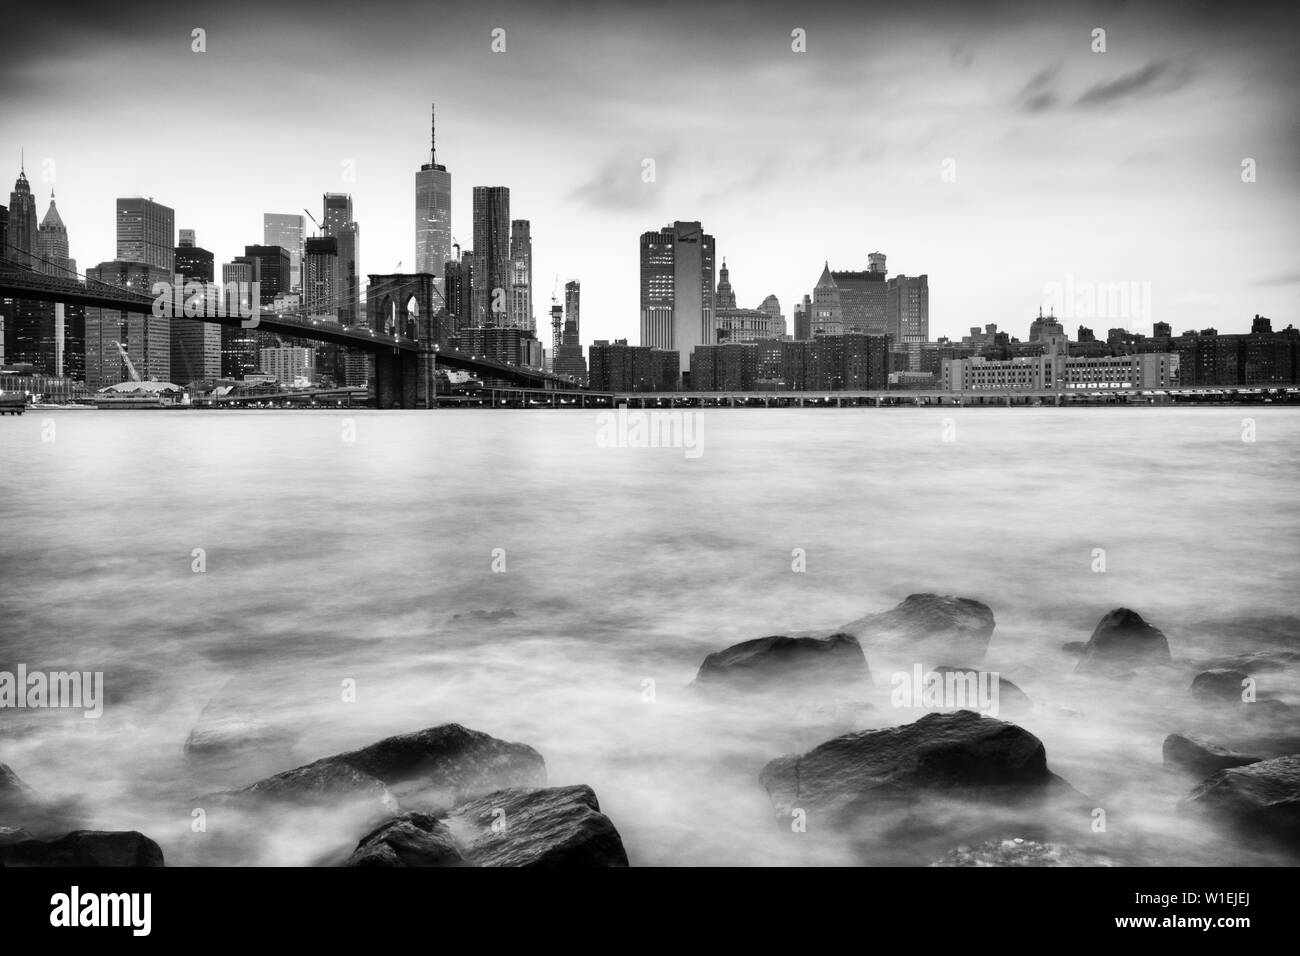 Puente de Brooklyn y Manhattan skyline tomada de Pebble Beach, la ciudad de Nueva York, Nueva York, Estados Unidos de América, América del Norte Foto de stock